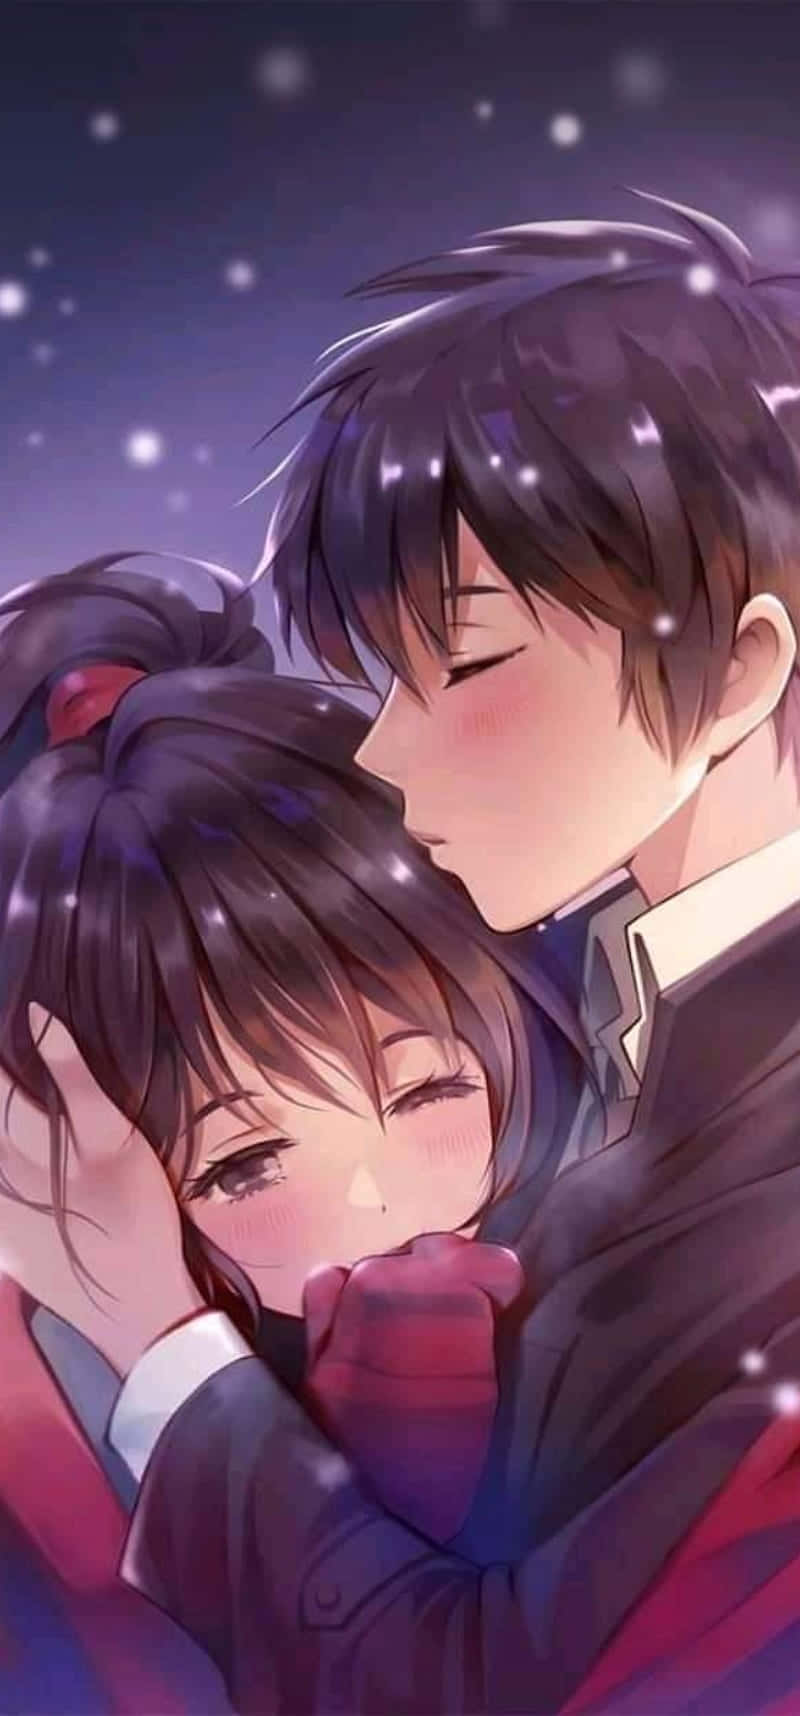 Cute nd romantic - Anime couples Fan Art (18633891) - Fanpop